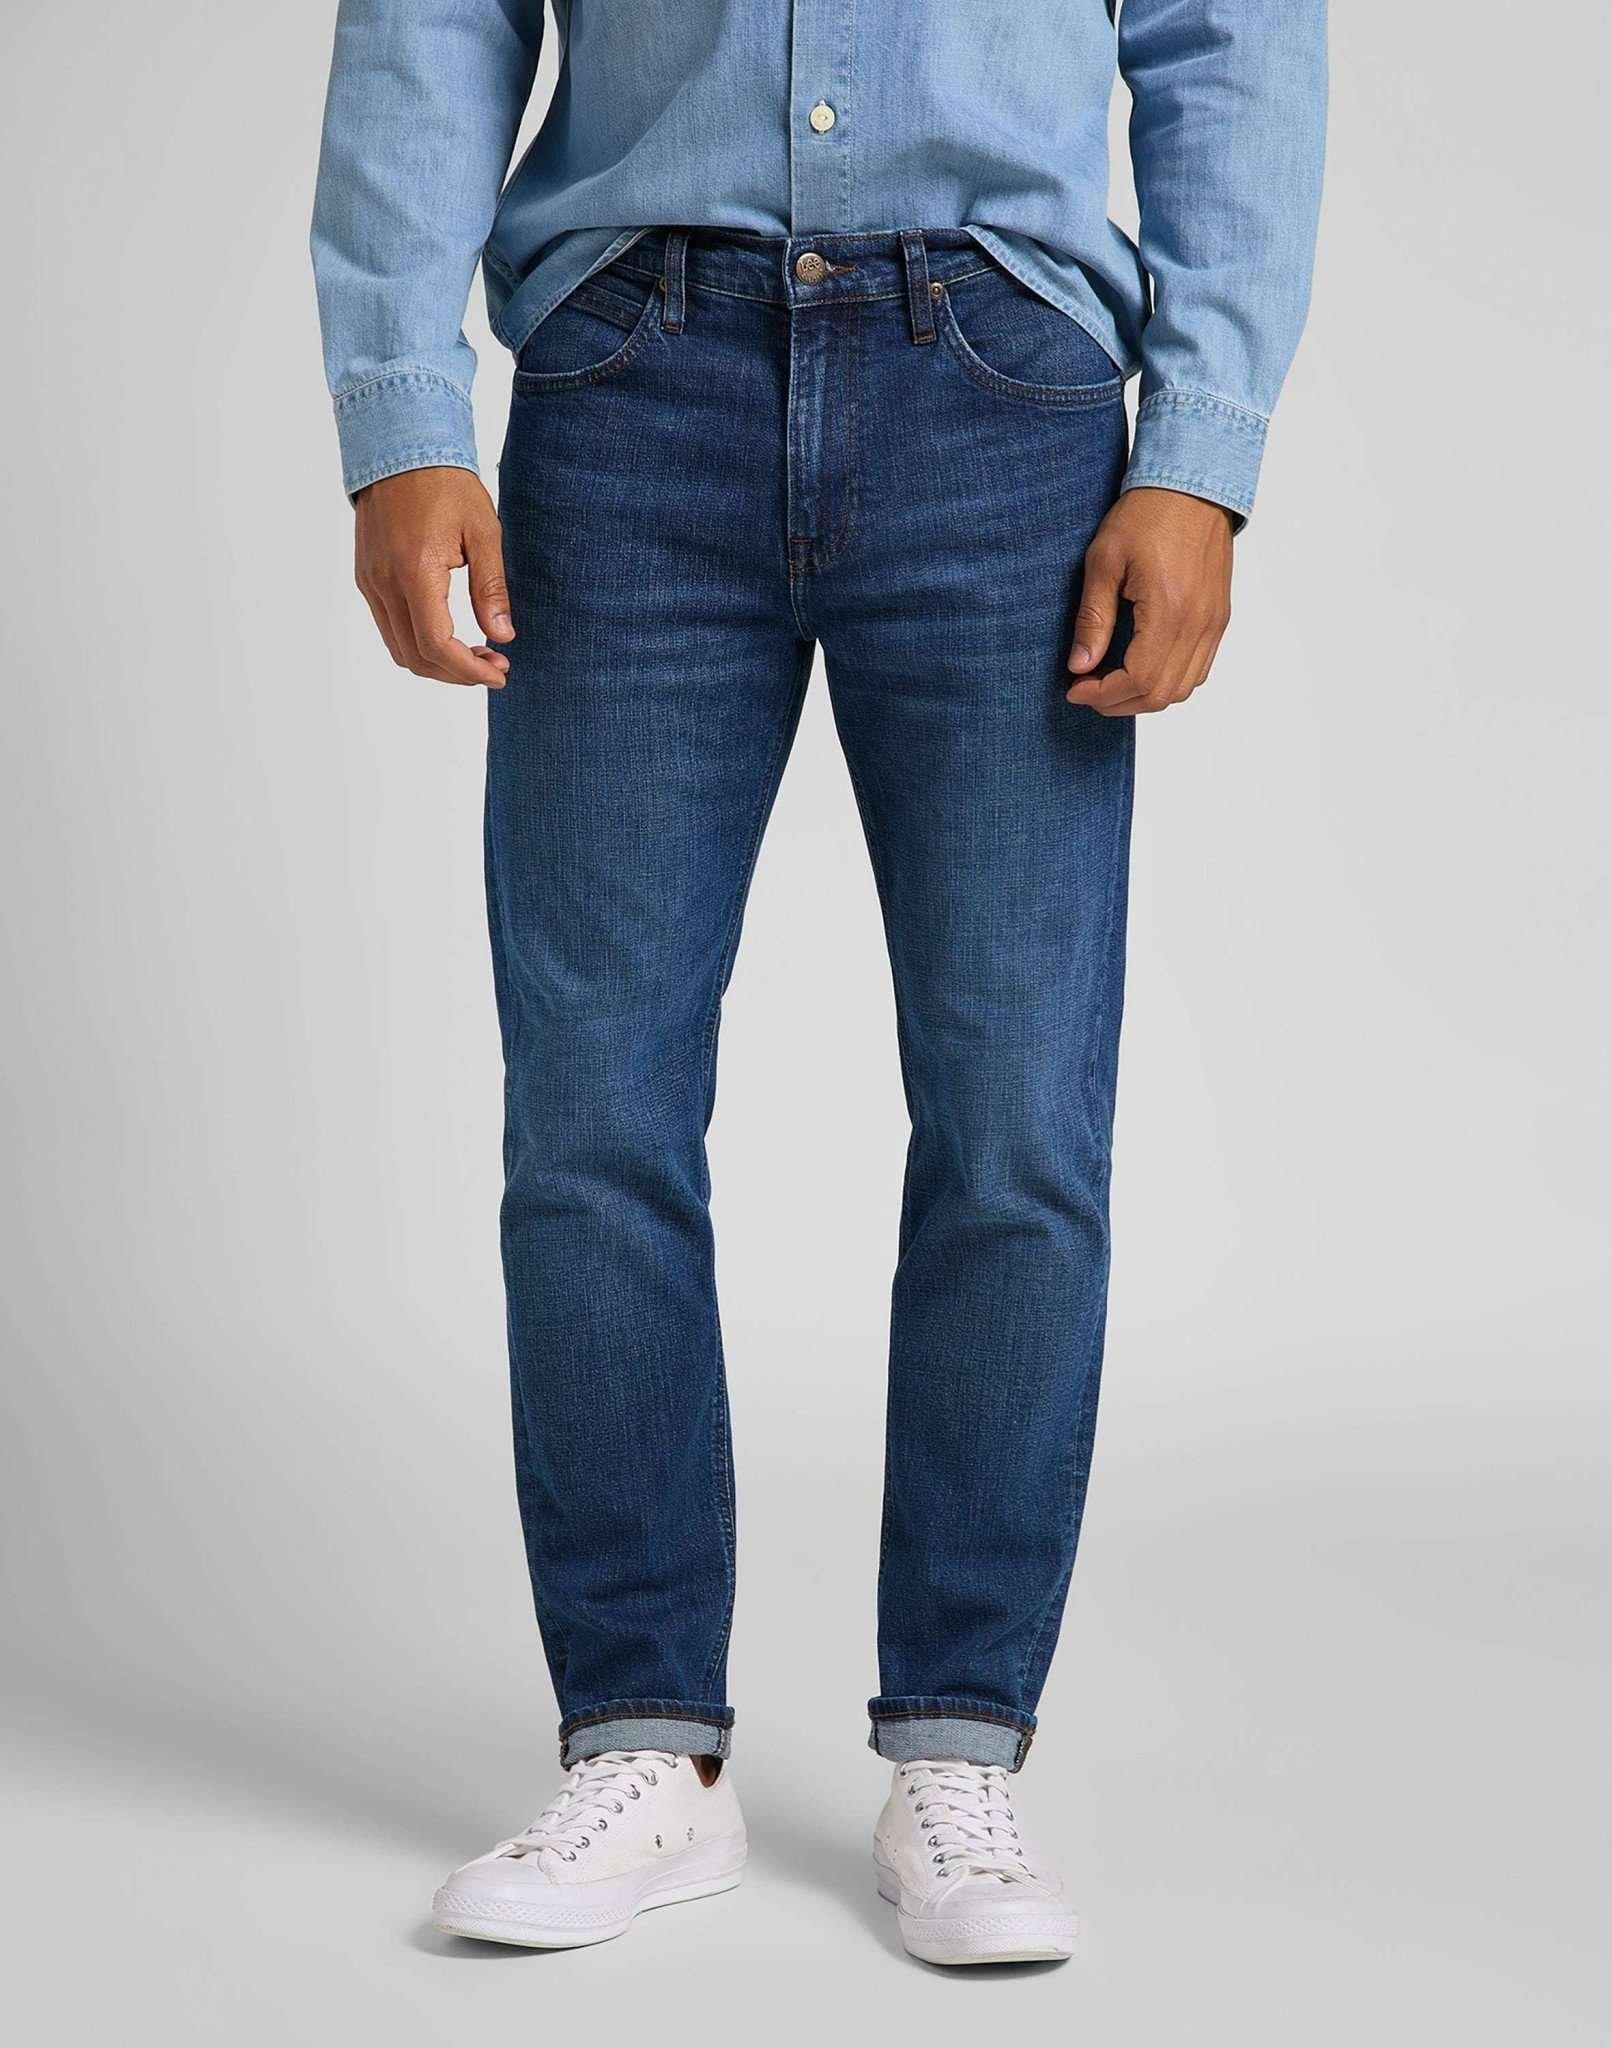 Jeans Straight Leg Austin Herren Blau Denim L32/W28 von Lee